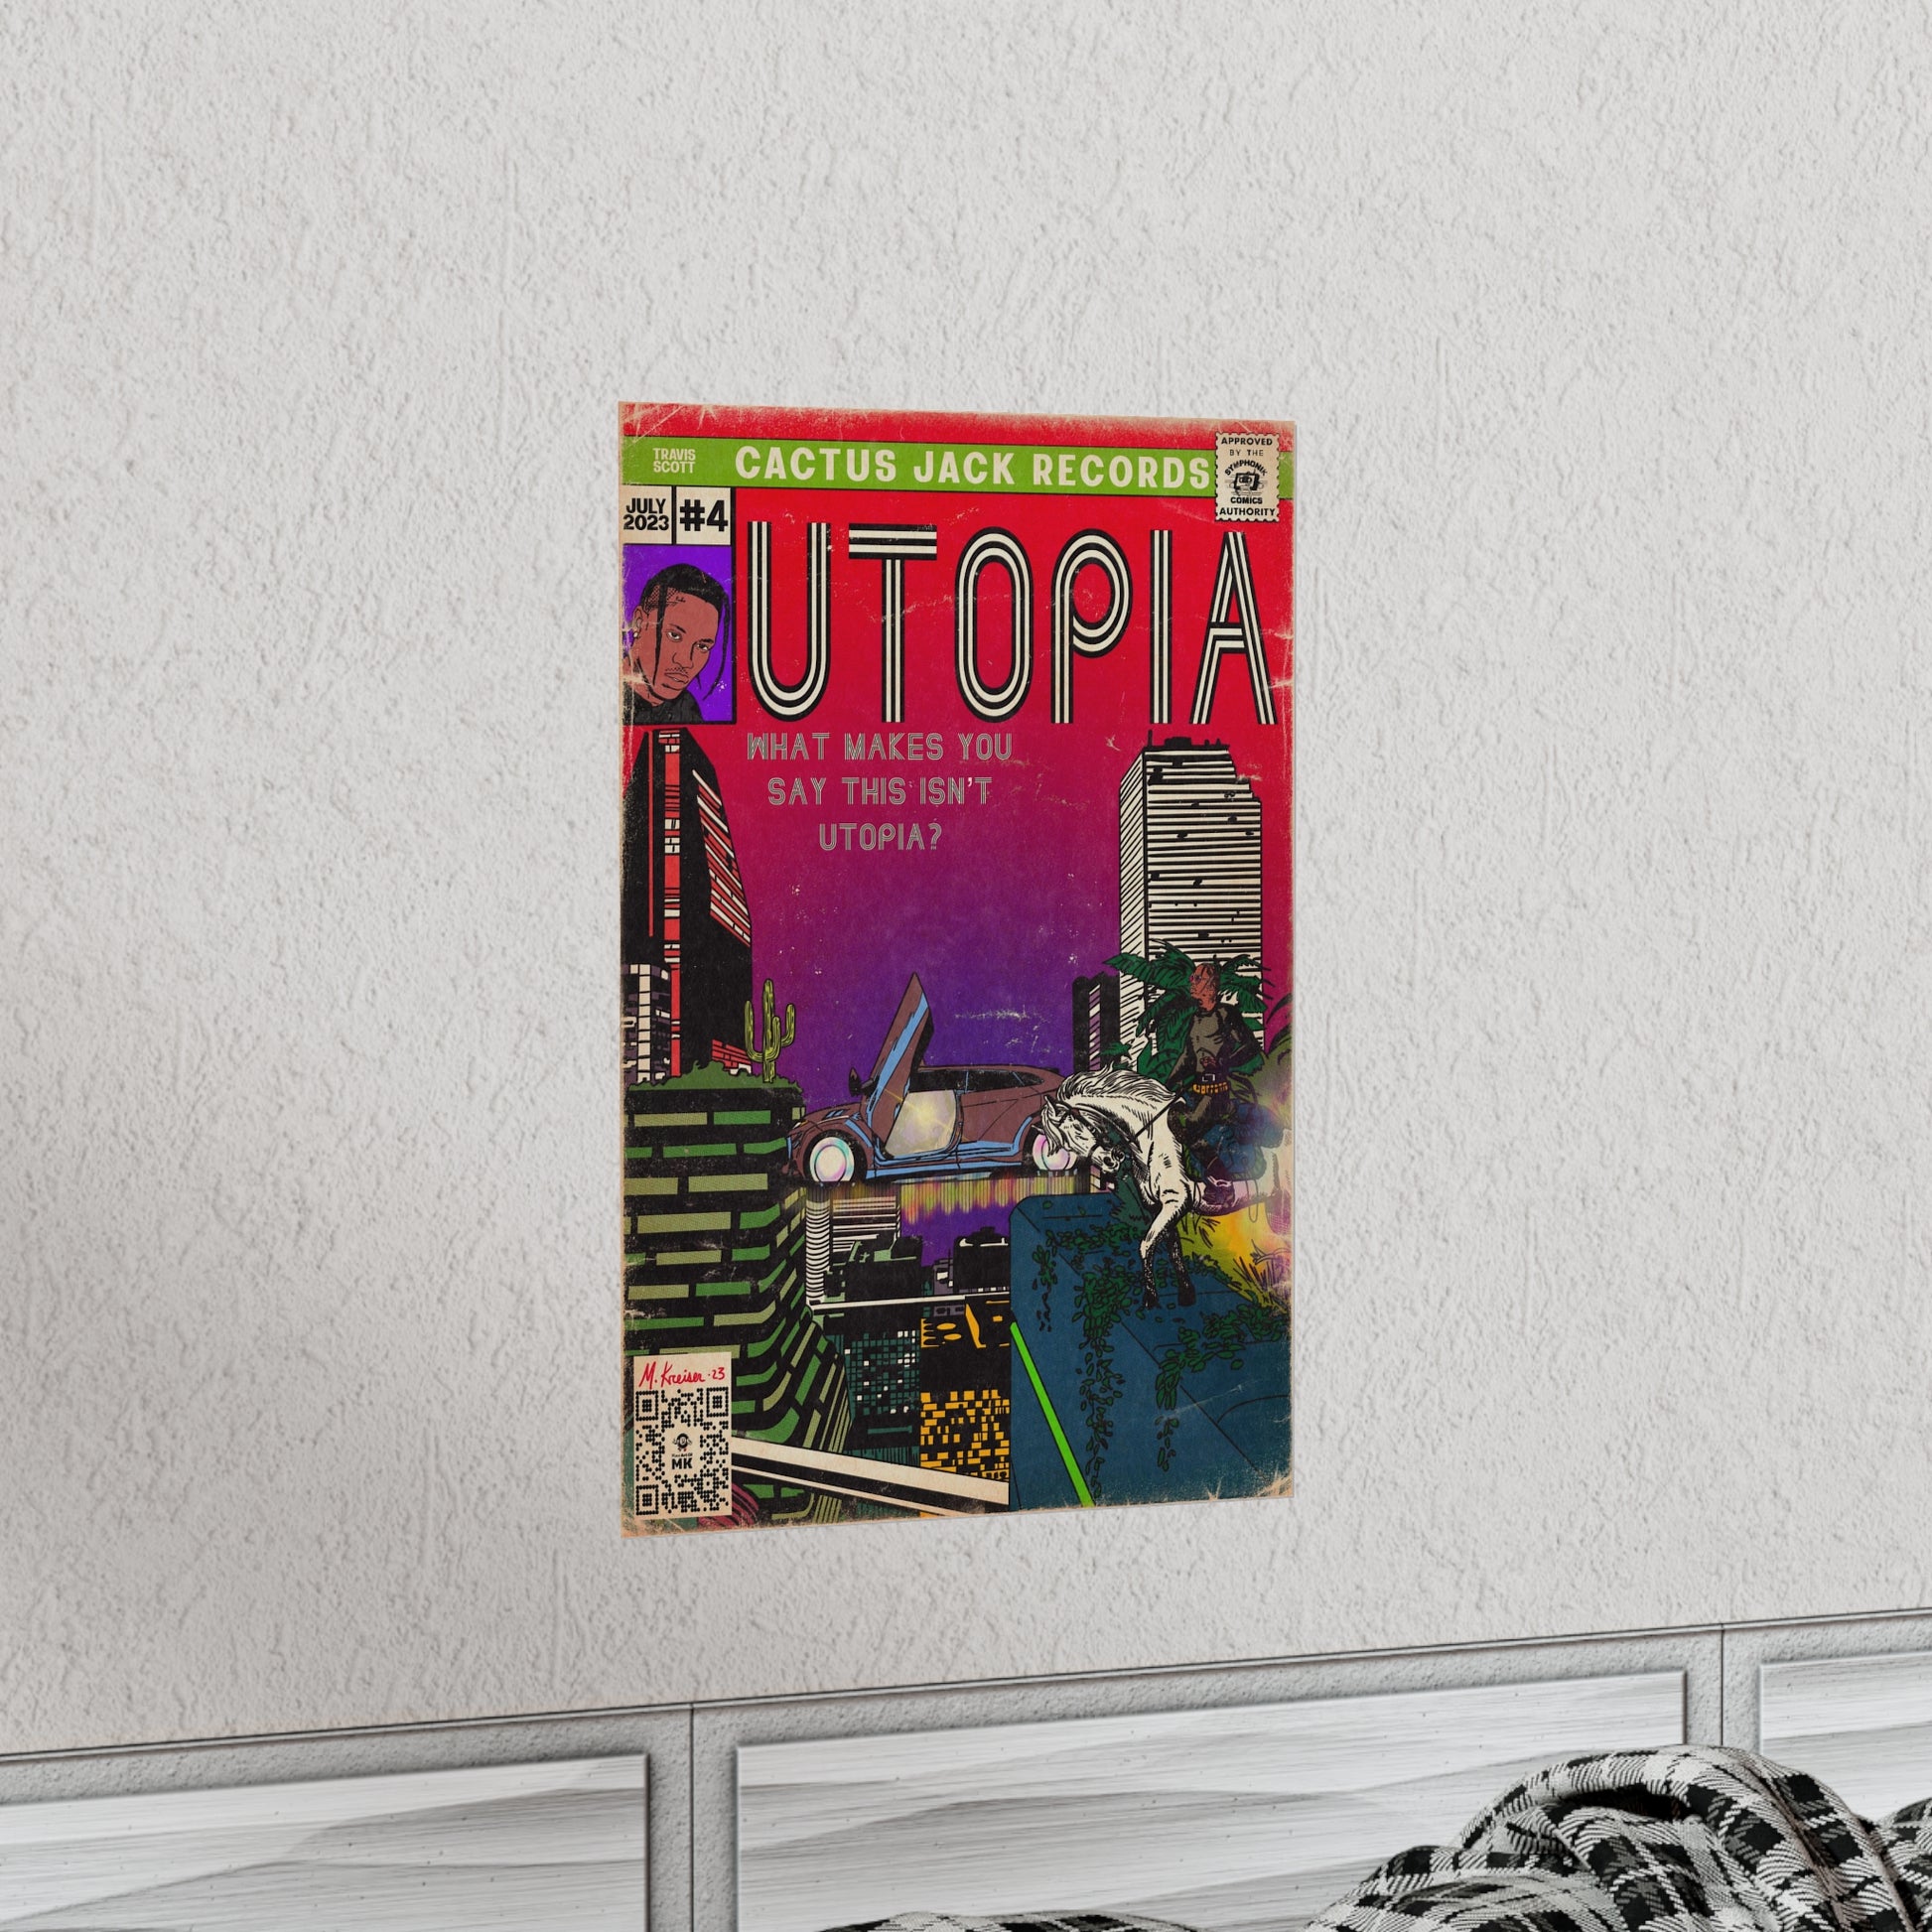 Utopia Concept Logo Wallpaper : r/travisscott